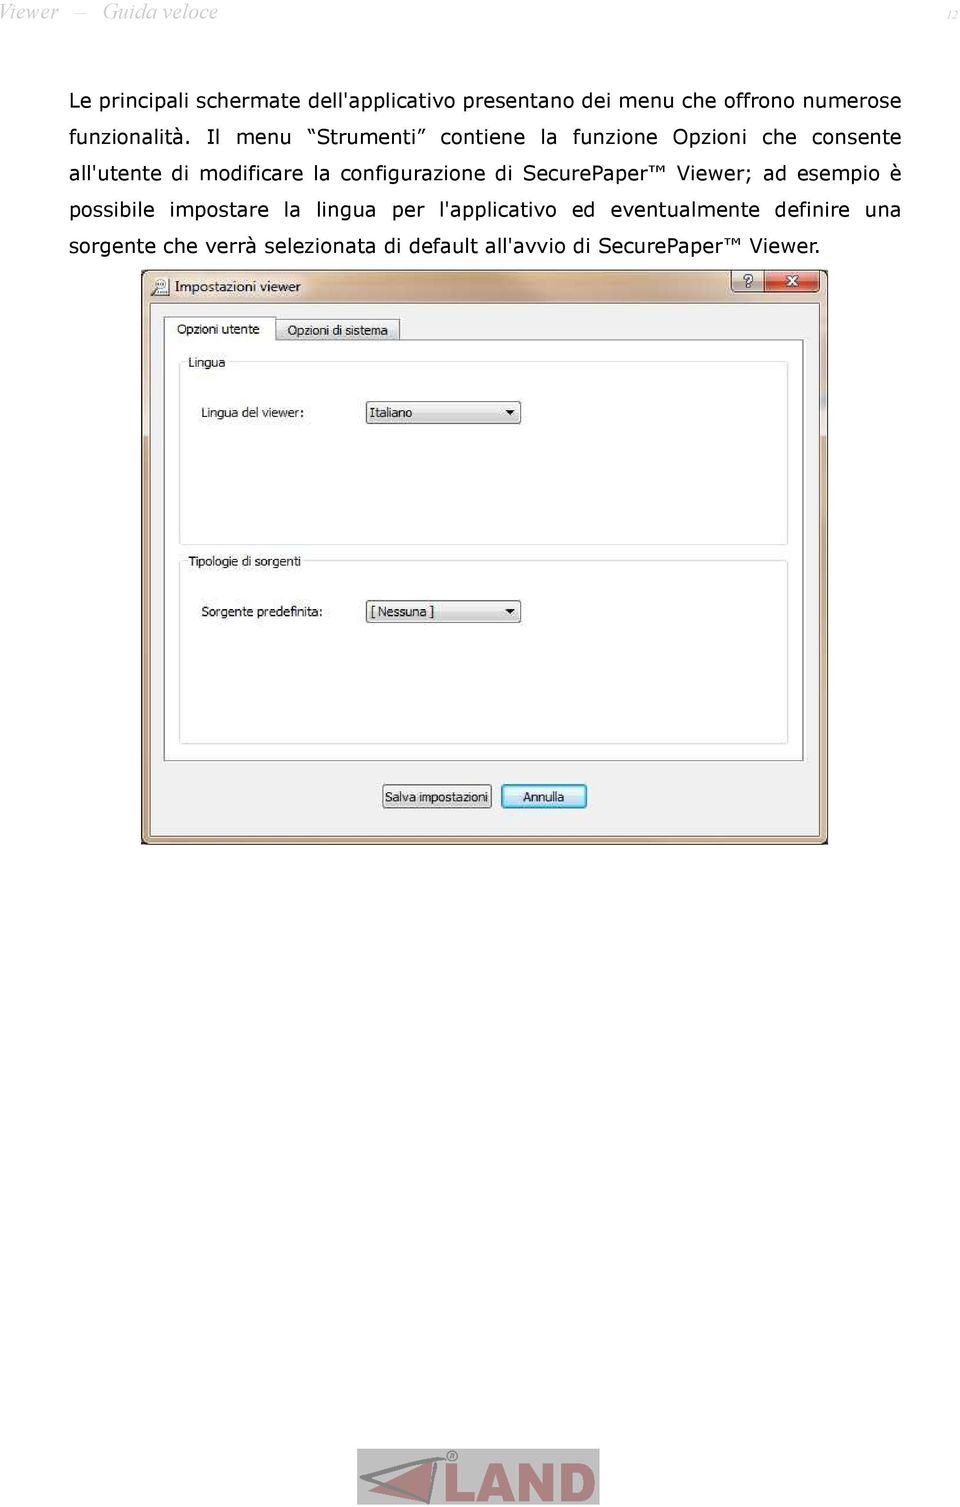 Il menu Strumenti contiene la funzione Opzioni che consente all'utente di modificare la configurazione